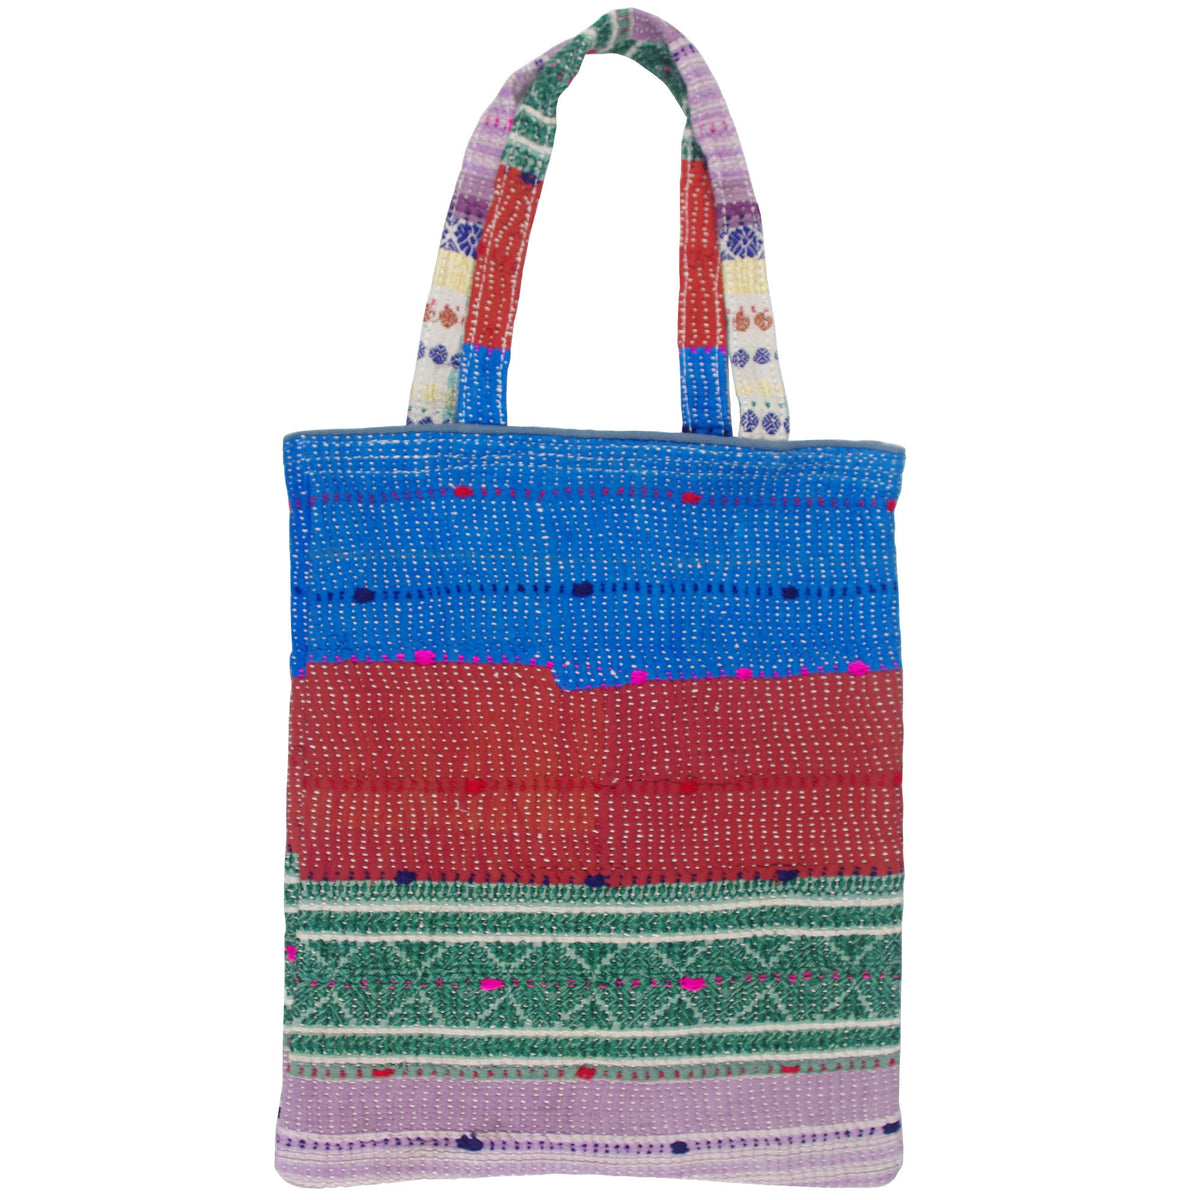 Vintage Fine Kantha Stitched Cotton Tote Bag - Multicolour